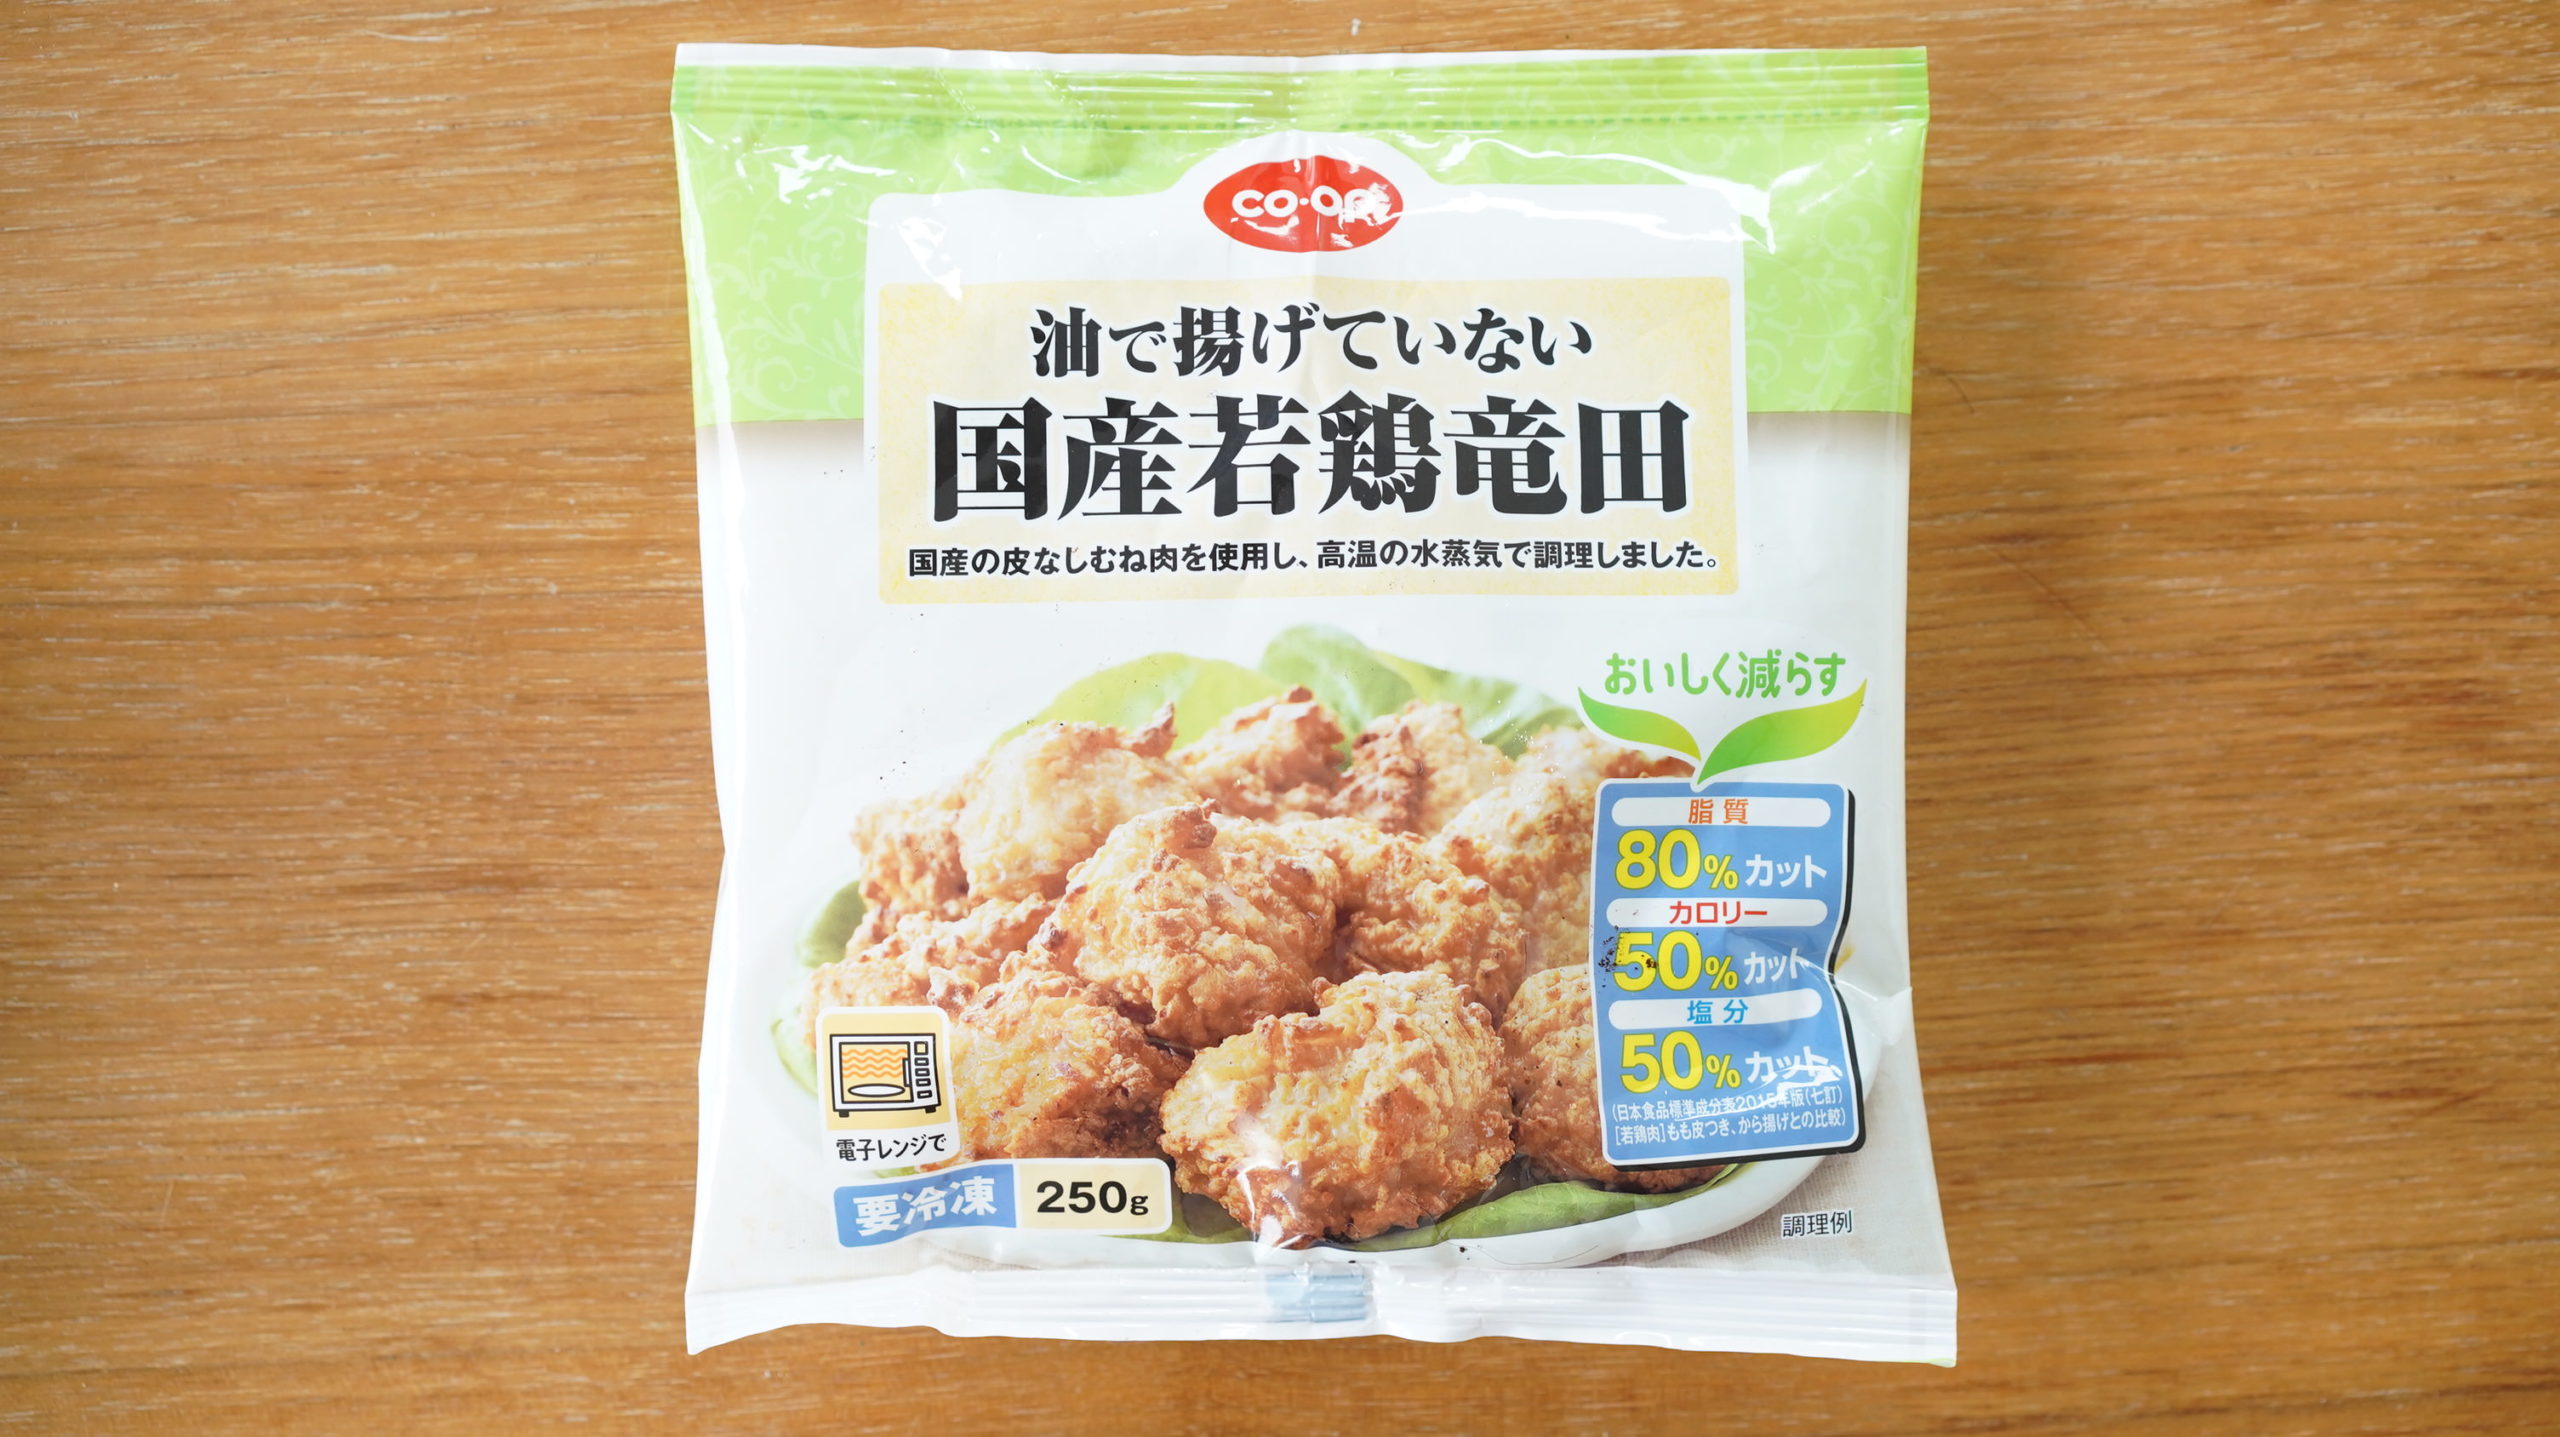 生協coop宅配の冷凍食品・ニチレイ「油で揚げていない国産若鶏竜田」のパッケージ写真